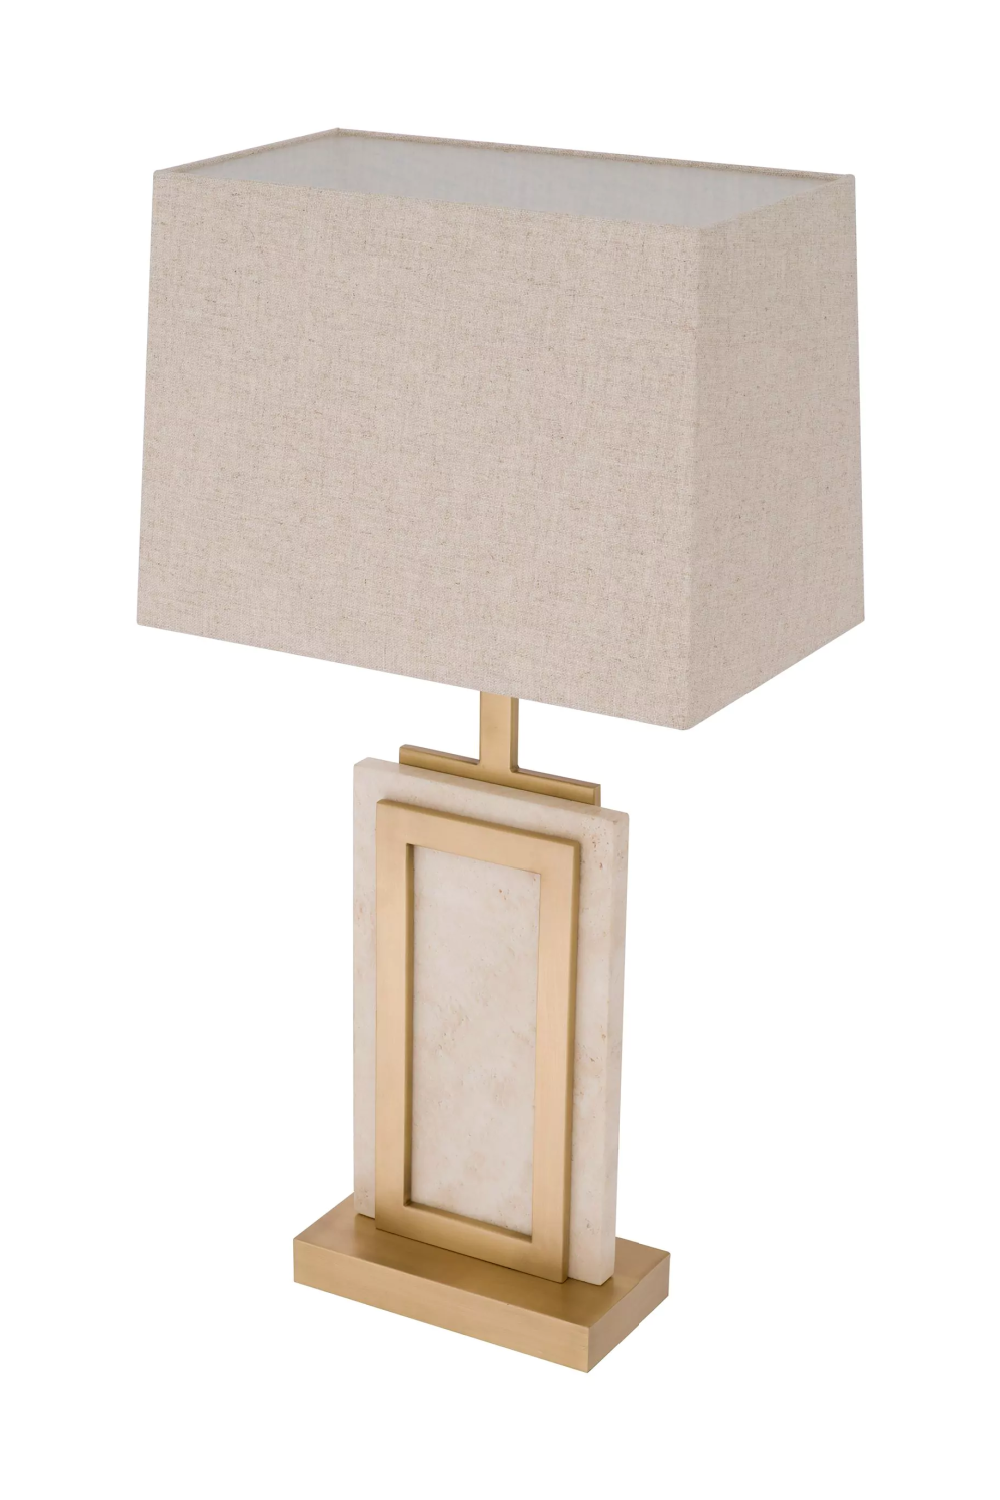 Classic Contemporary Table Lamp | Eichholtz Murray | Oroa.com